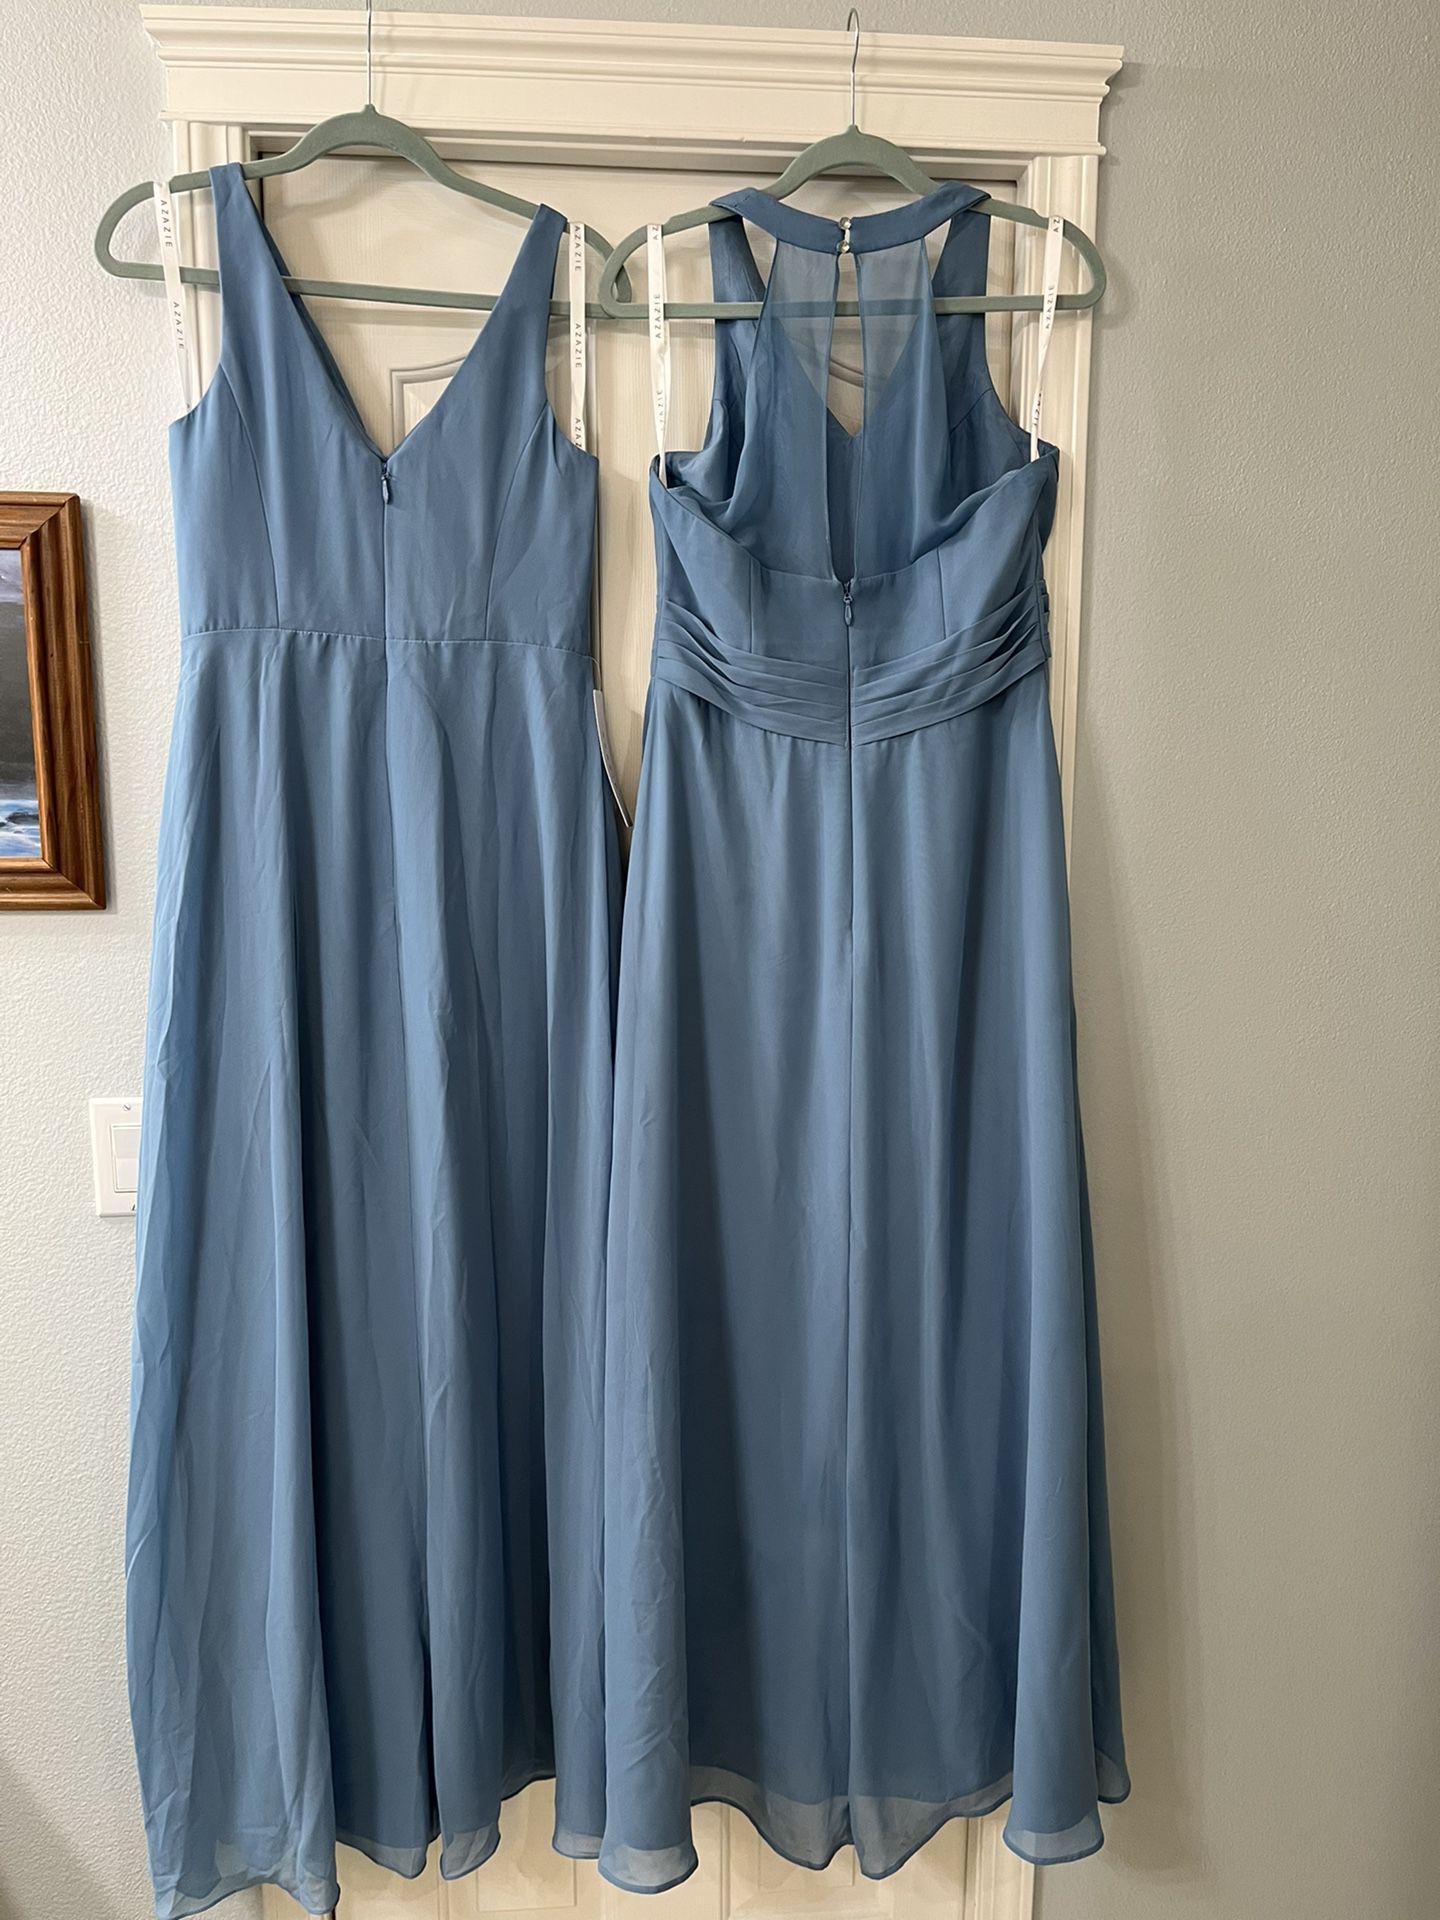 2 Steel Blue Bridesmaid Dresses